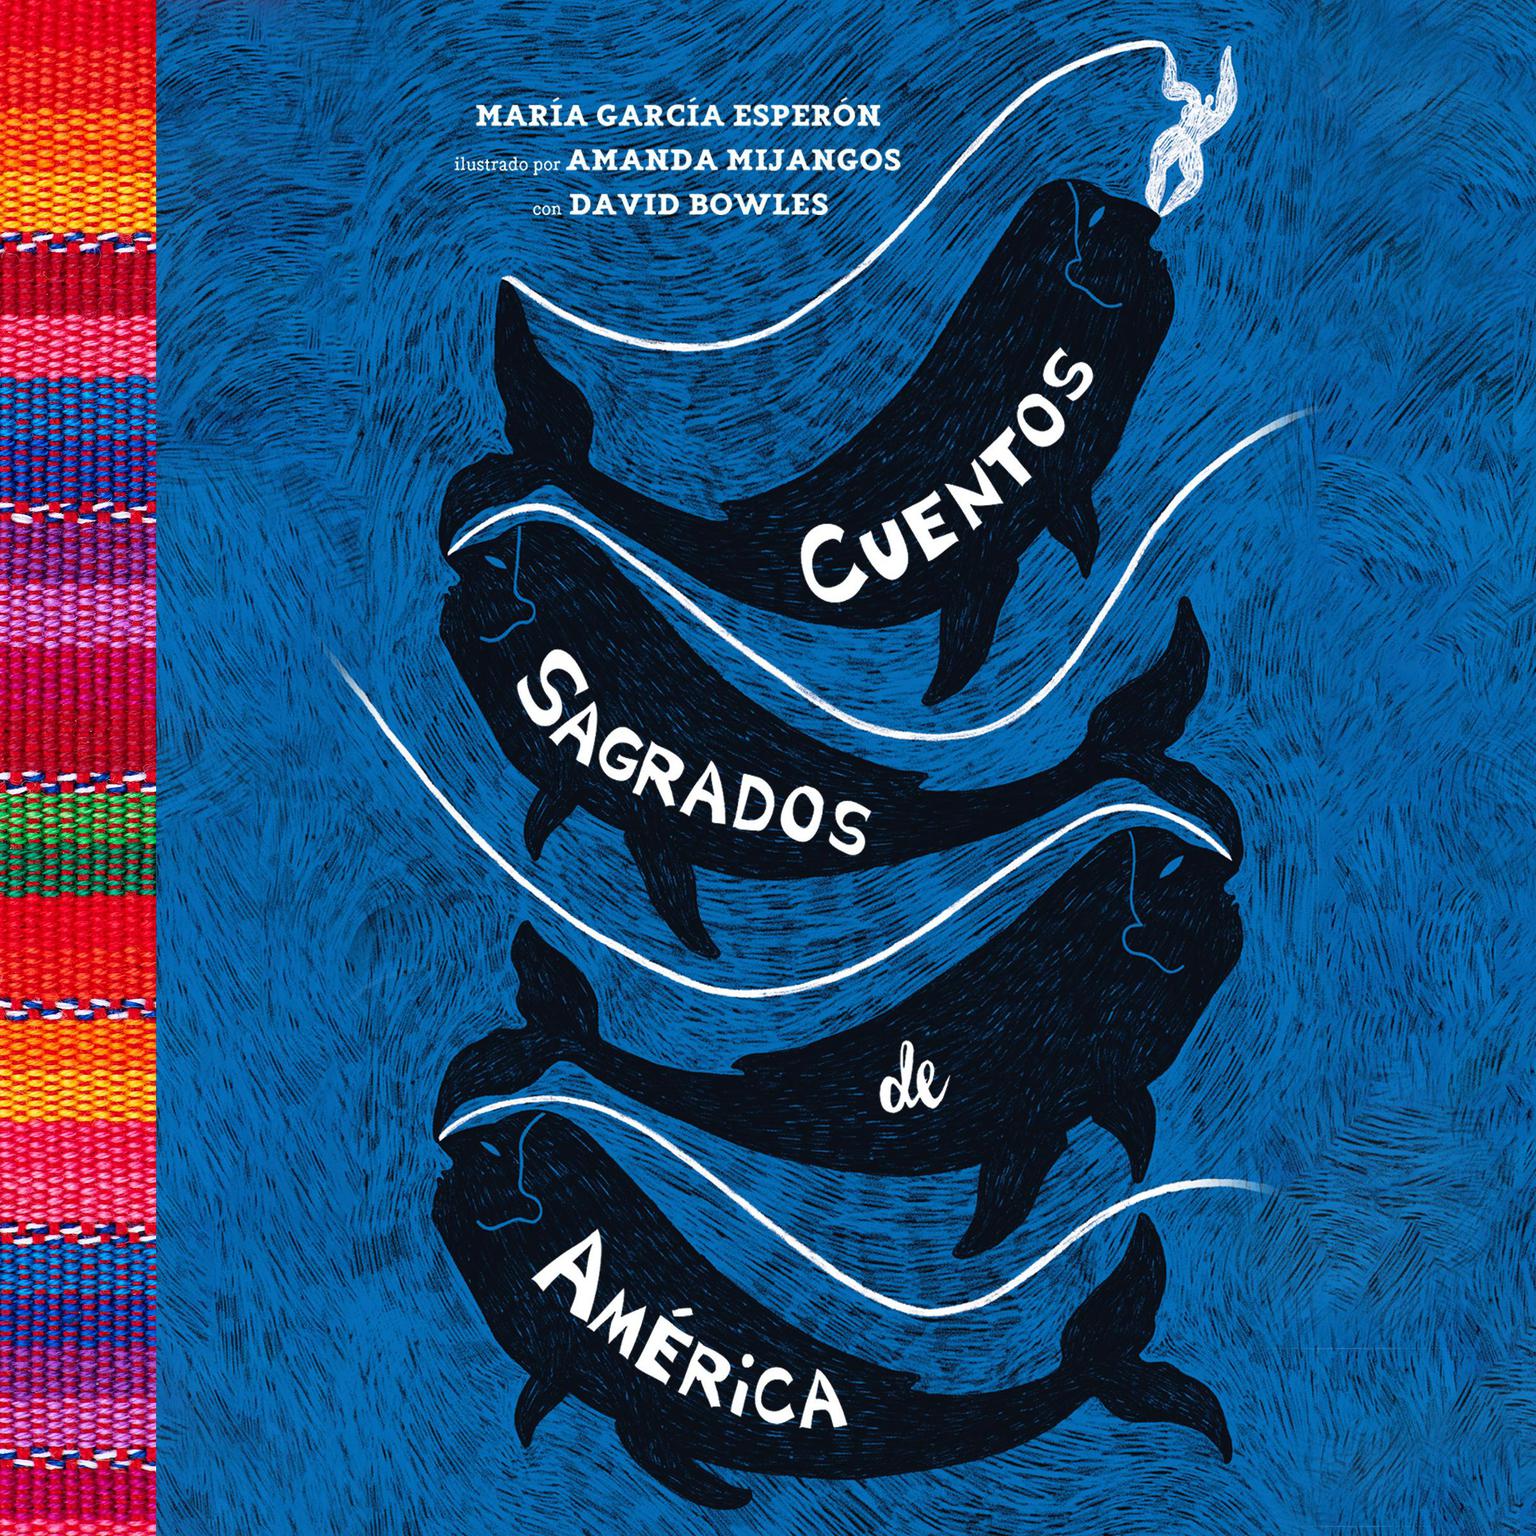 Cuentos sagrados de América: The Sea-Ringed World (Spanish Edition) Audiobook, by Maria Garcia Esperon